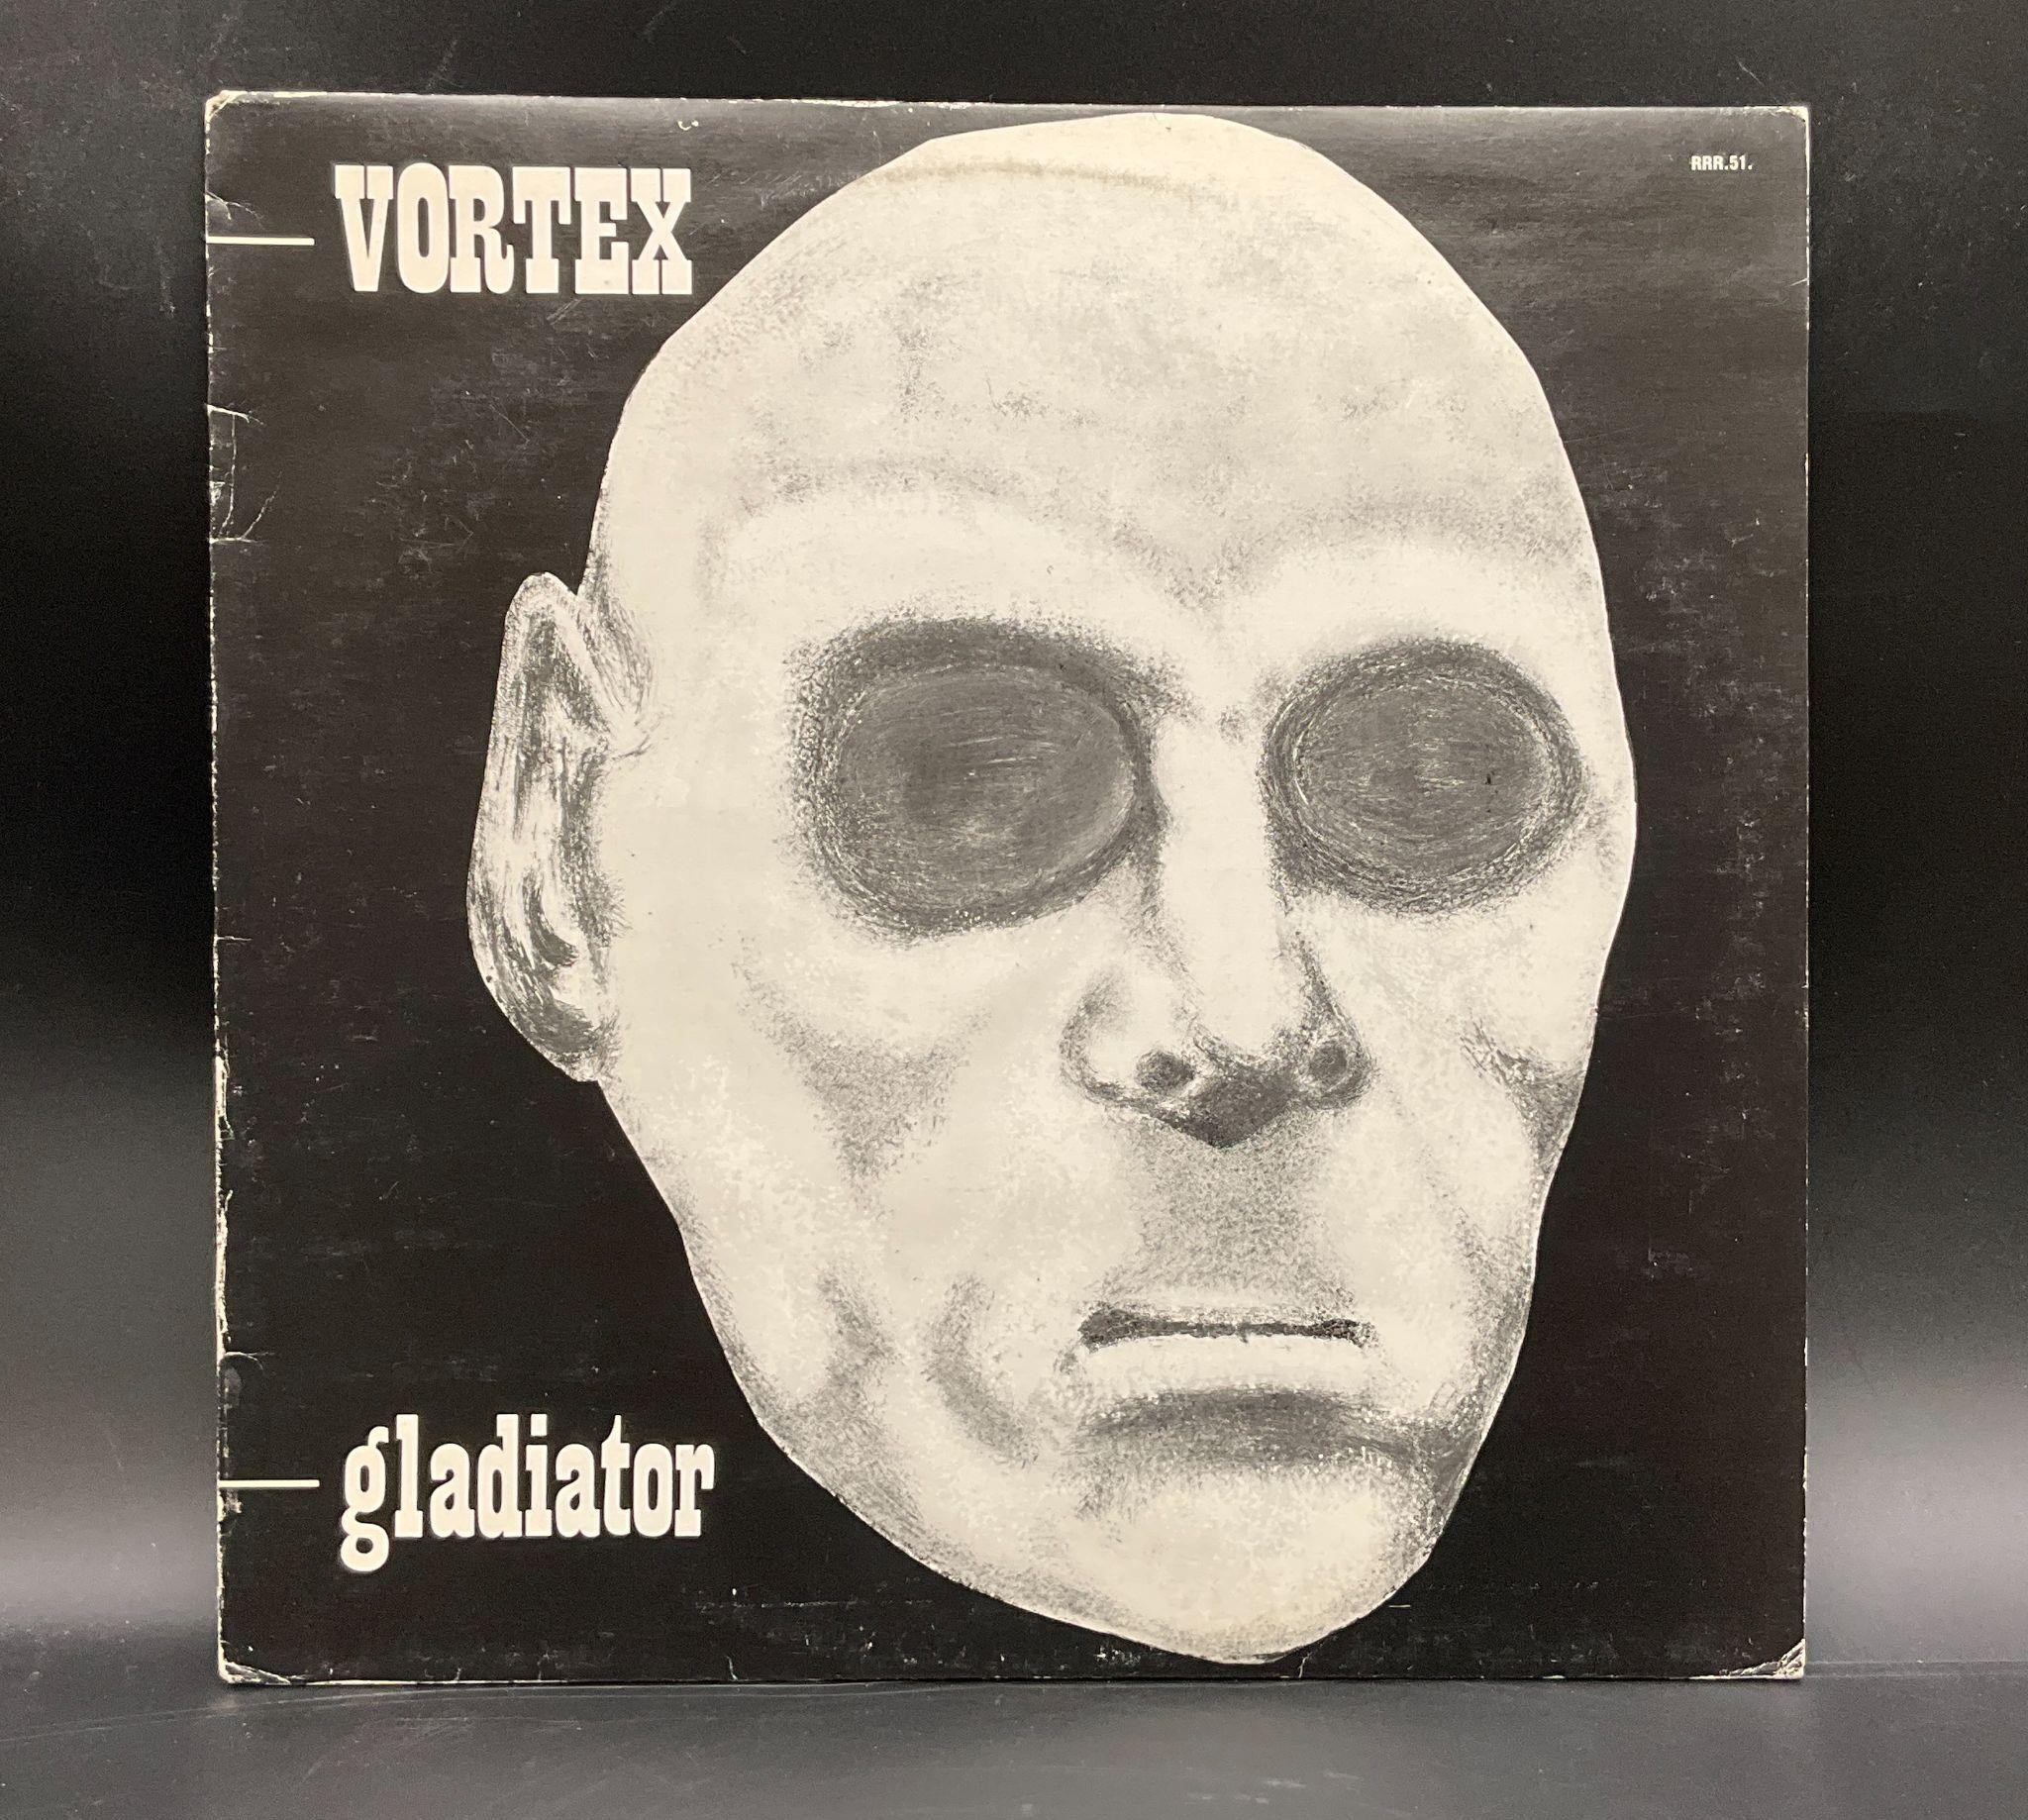 1985 Vortex "Gladiator" German Punk Oi! LP